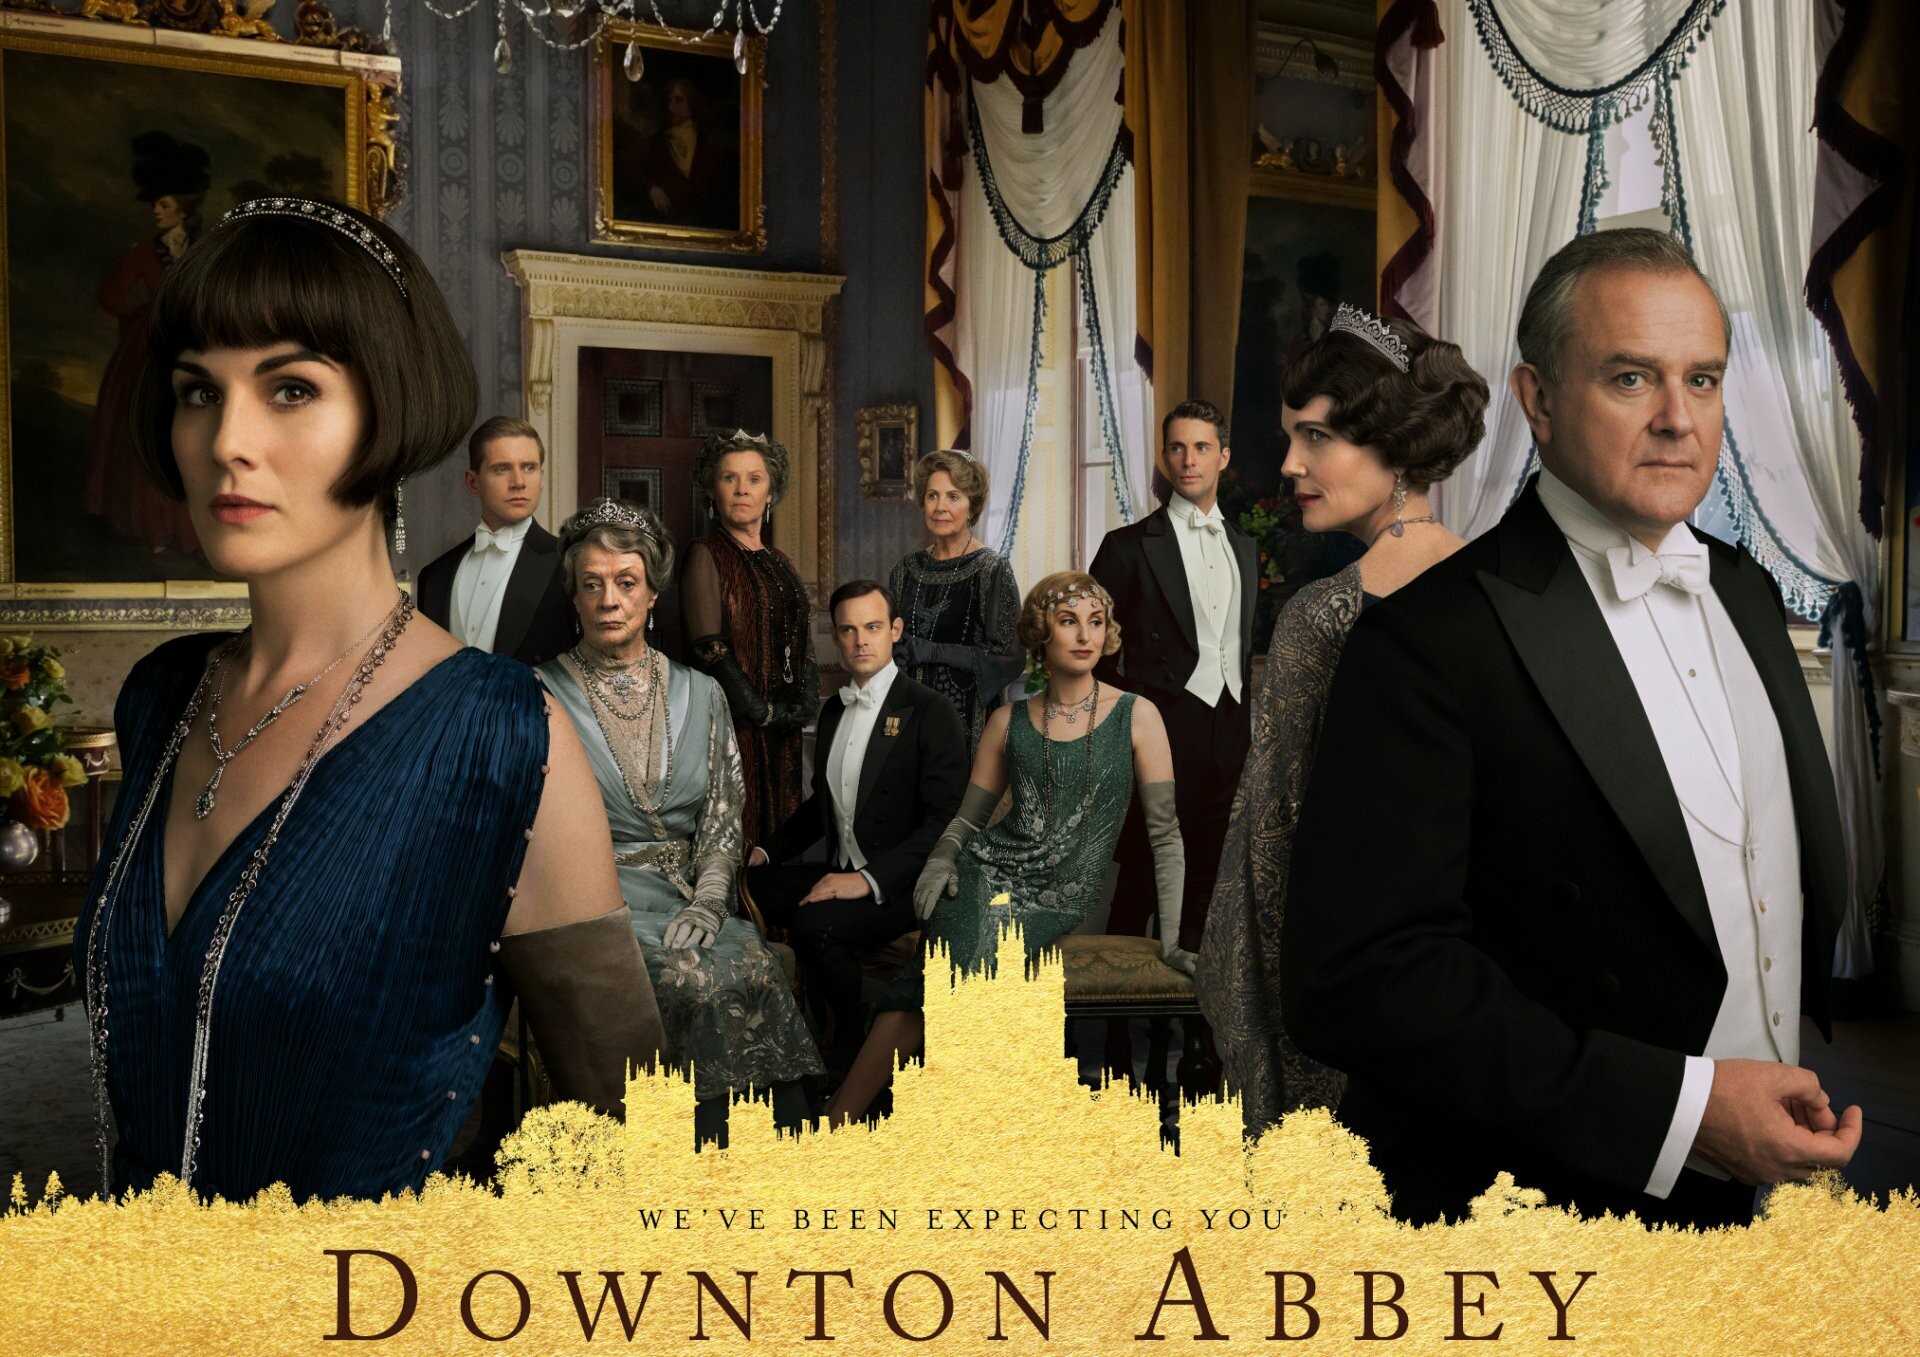 Downton Abbey: Robert Crawley, Cora Levinson Crawley, Mary Crawley. 1920x1360 HD Wallpaper.